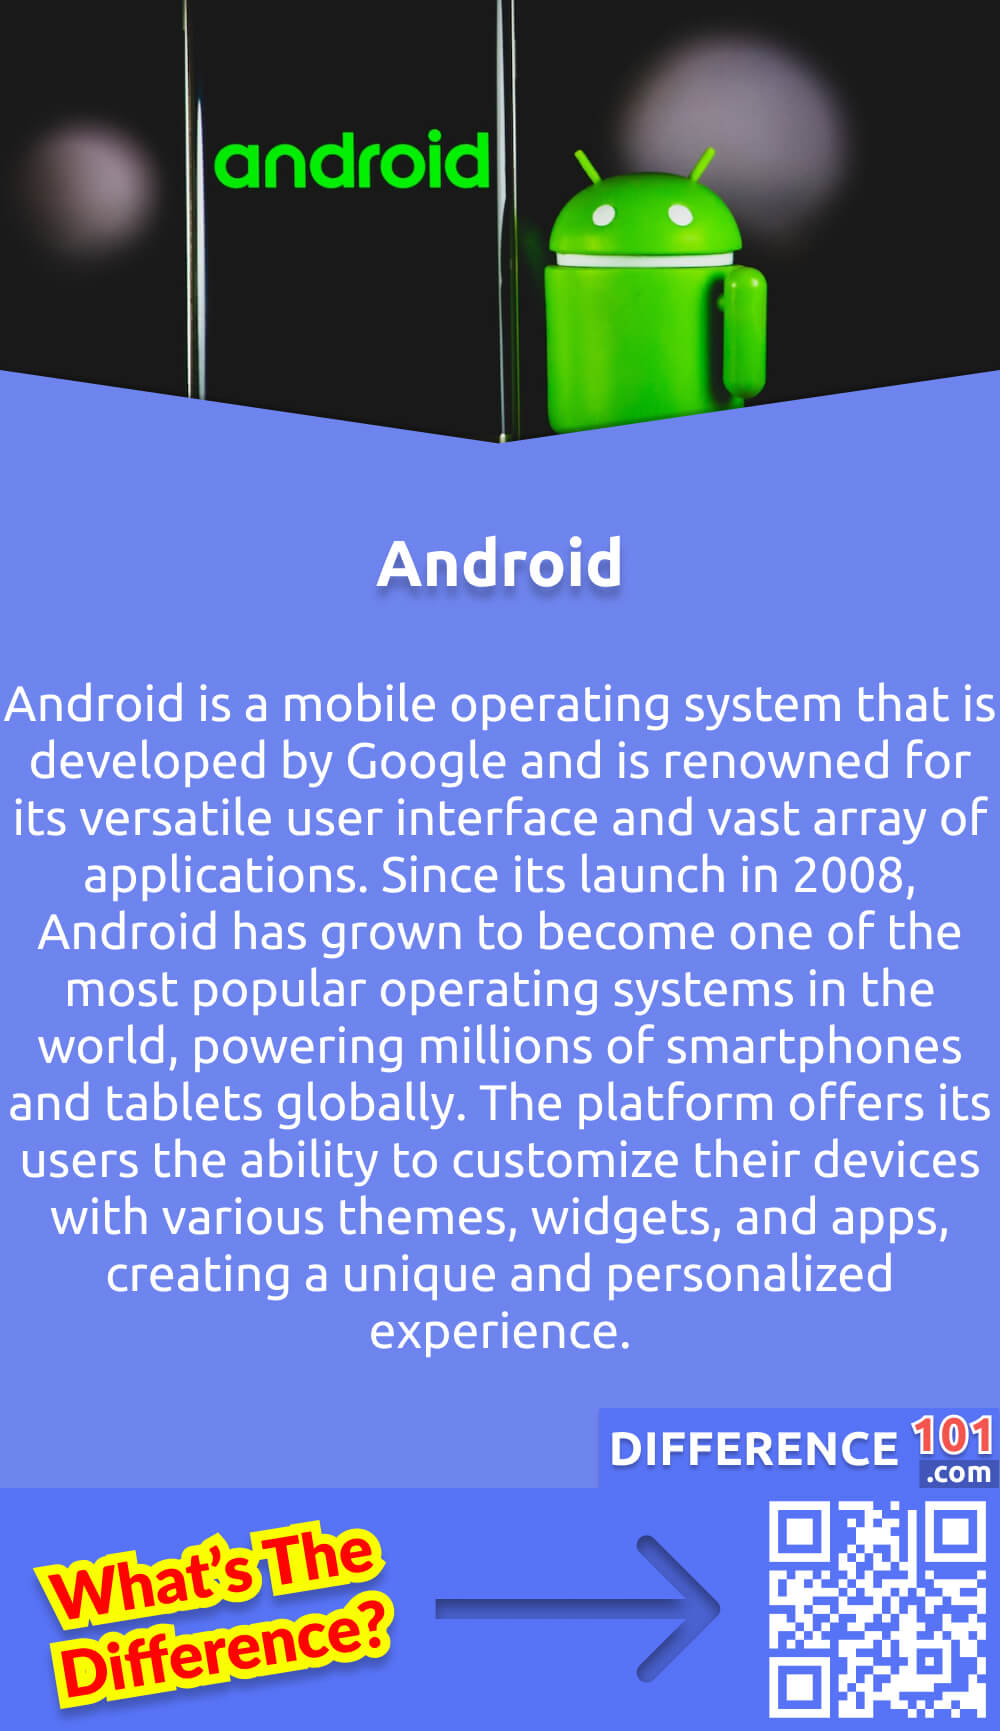 Was ist Android? Android ist ein mobiles Betriebssystem, das von Google entwickelt wird und für seine vielseitige Benutzeroberfläche und die große Anzahl von Anwendungen bekannt ist. Seit seiner Einführung im Jahr 2008 hat sich Android zu einem der beliebtesten Betriebssysteme der Welt entwickelt und wird weltweit auf Millionen von Smartphones und Tablets eingesetzt. Die Plattform bietet ihren Nutzern die Möglichkeit, ihre Geräte mit verschiedenen Themen, Widgets und Apps anzupassen und so ein einzigartiges und persönliches Erlebnis zu schaffen. Android bietet verschiedene Funktionen wie den Google Assistant, mit dem der Nutzer über Sprachbefehle mit seinem Gerät interagieren kann, und die Möglichkeit, auf den Google Play Store zuzugreifen, um verschiedene Anwendungen herunterzuladen. Insgesamt bietet Android ein außergewöhnliches mobiles Erlebnis, und seine Vielseitigkeit und Integration mit anderen Google-Diensten machen es zu einer ausgezeichneten Wahl für Nutzer weltweit.